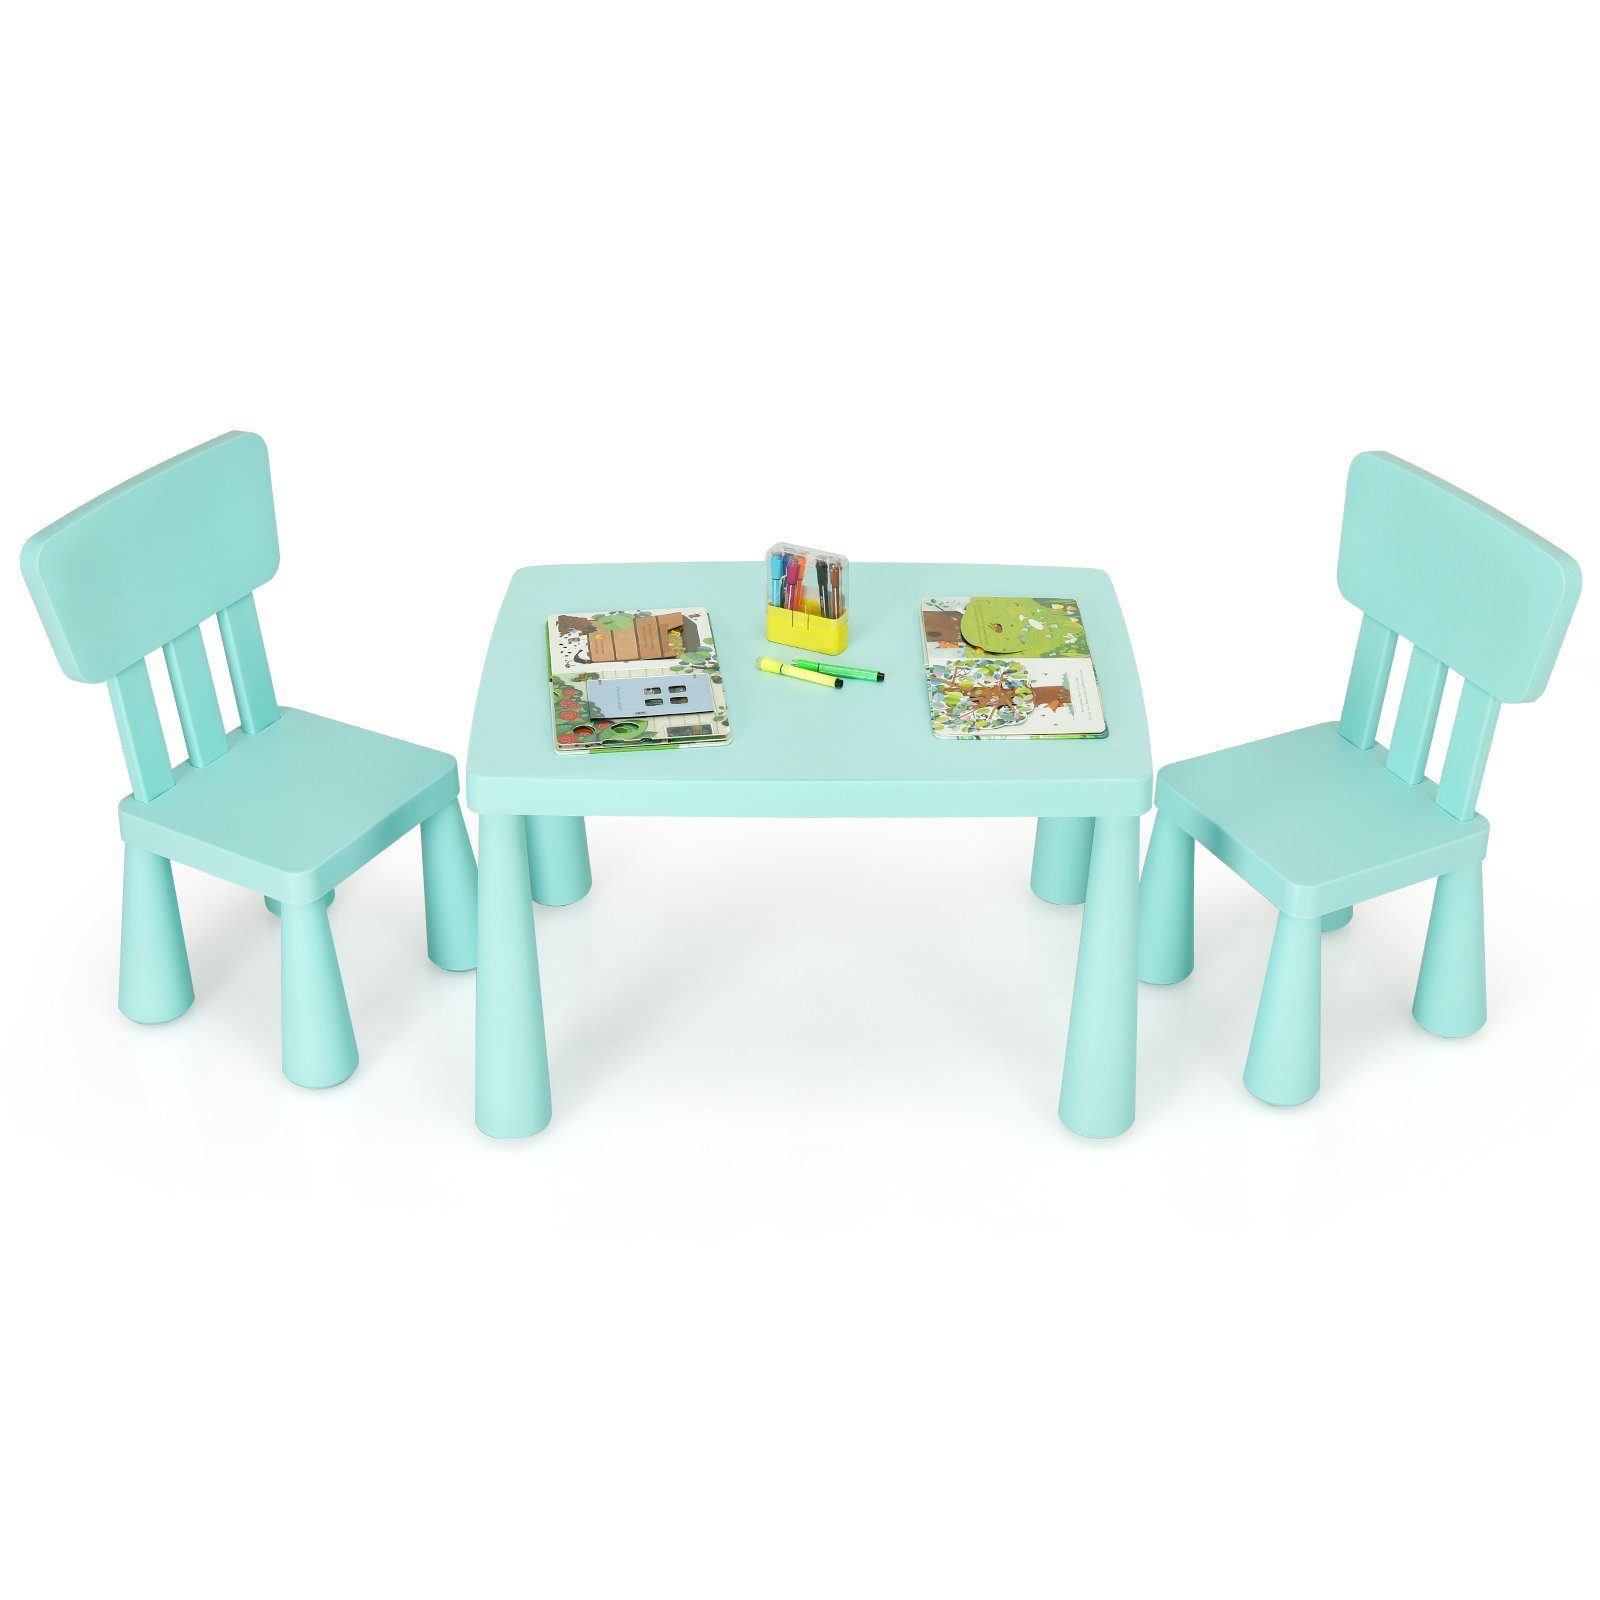 COSTWAY Kindersitzgruppe 3 TLG. Детская мебель, (Kindertisch mit 2 Stühlen)